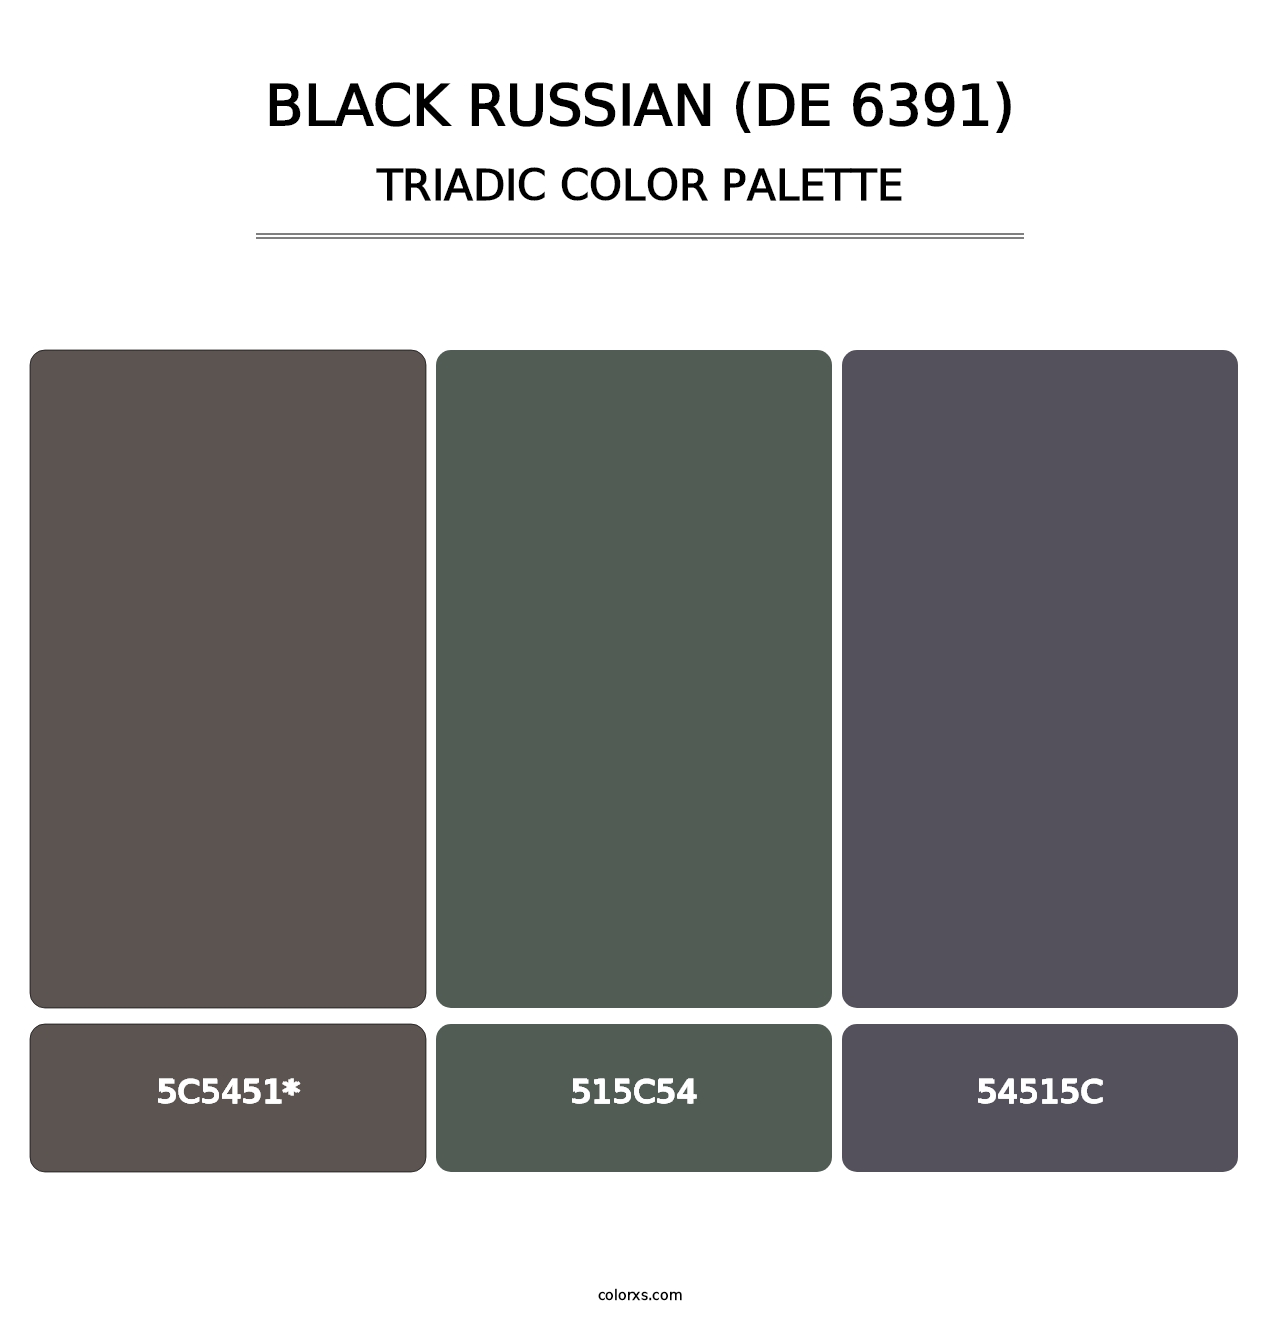 Black Russian (DE 6391) - Triadic Color Palette